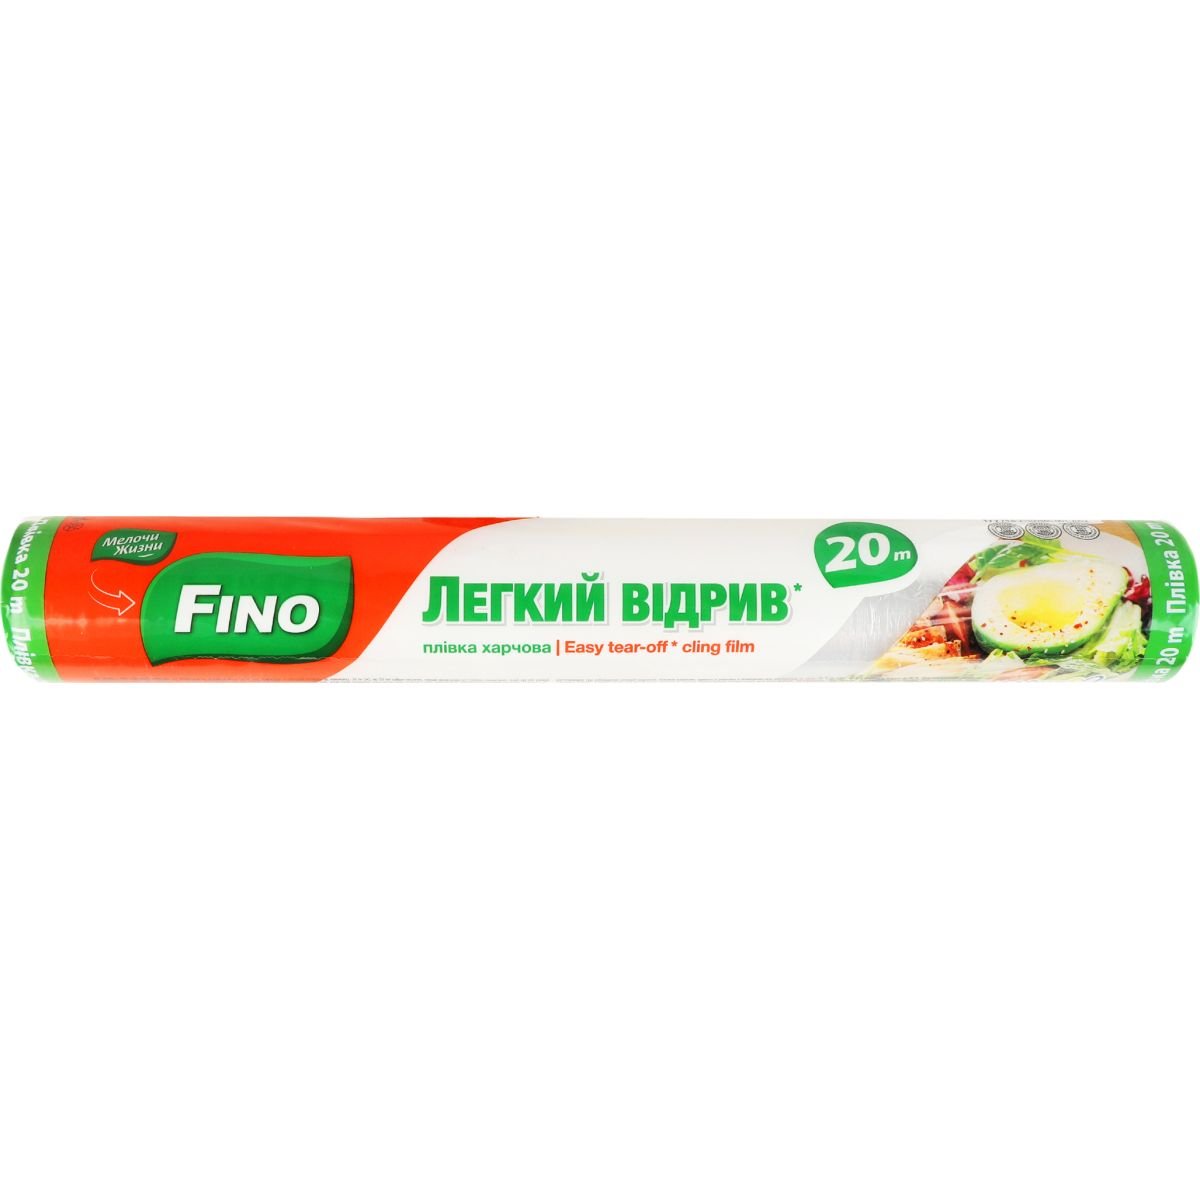 Пленка для продуктов Fino Легкий отрыв 20 м - фото 1